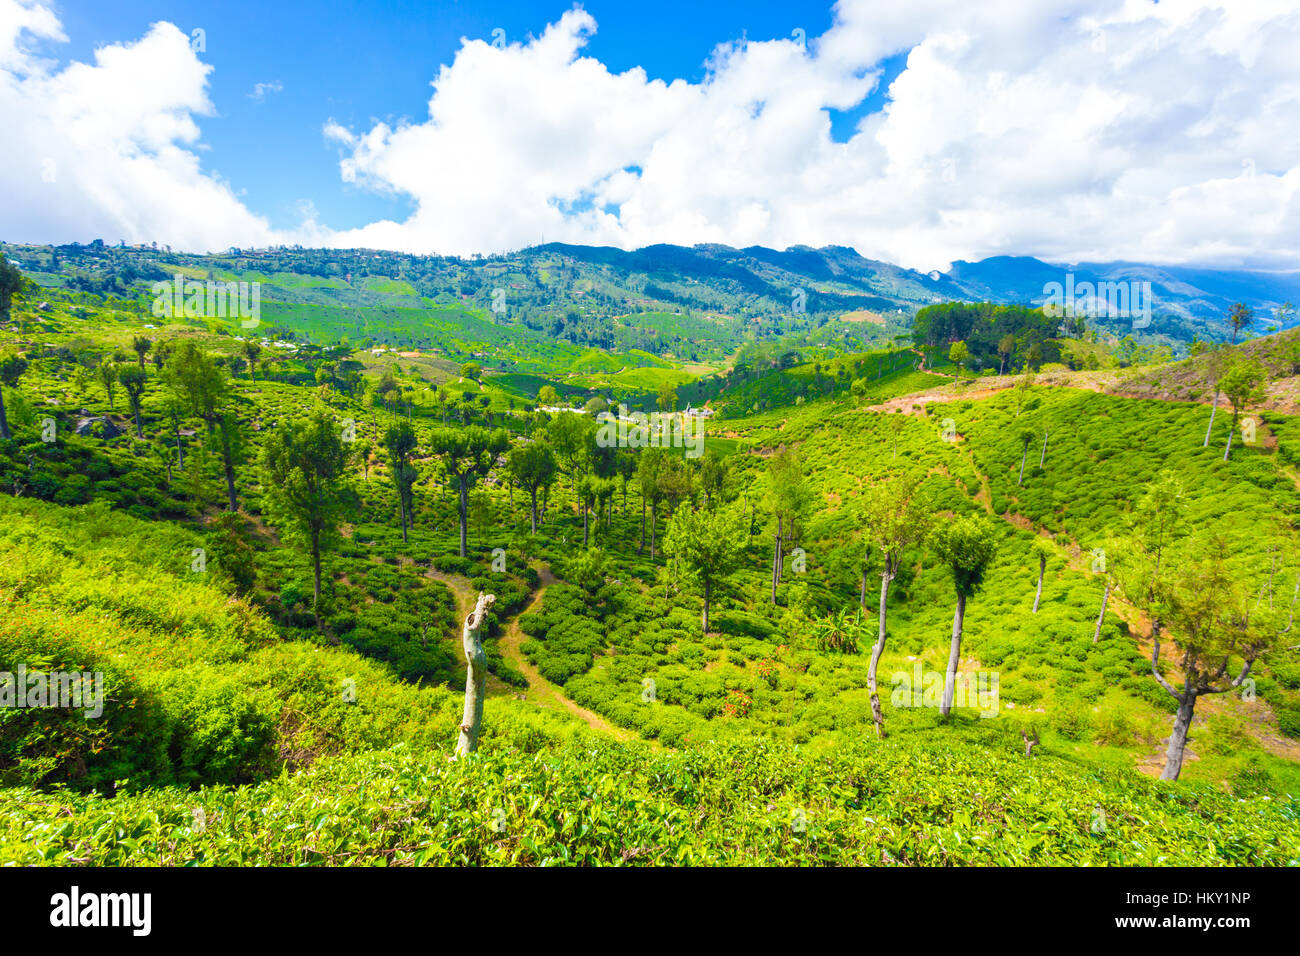 El paisaje hermoso panorama de plantaciones de té verde valle y las montañas circundantes alrededor de cuidados plantas de té Foto de stock